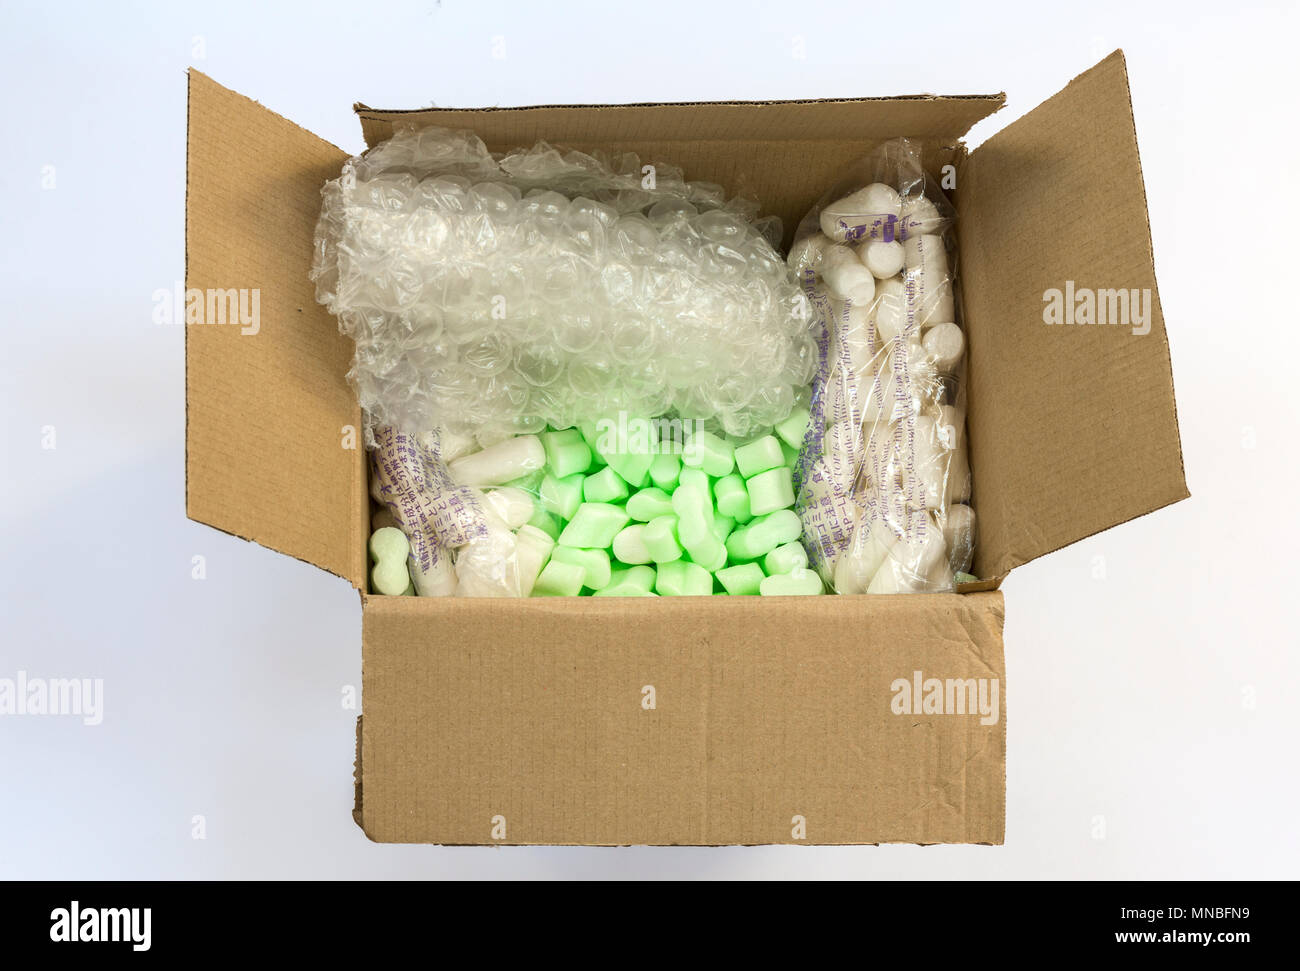 Caja con embalaje protector - fichas de espuma, plástico de burbujas, espuma de almidón de patatas fritas (derecha e izquierda). Foto de stock